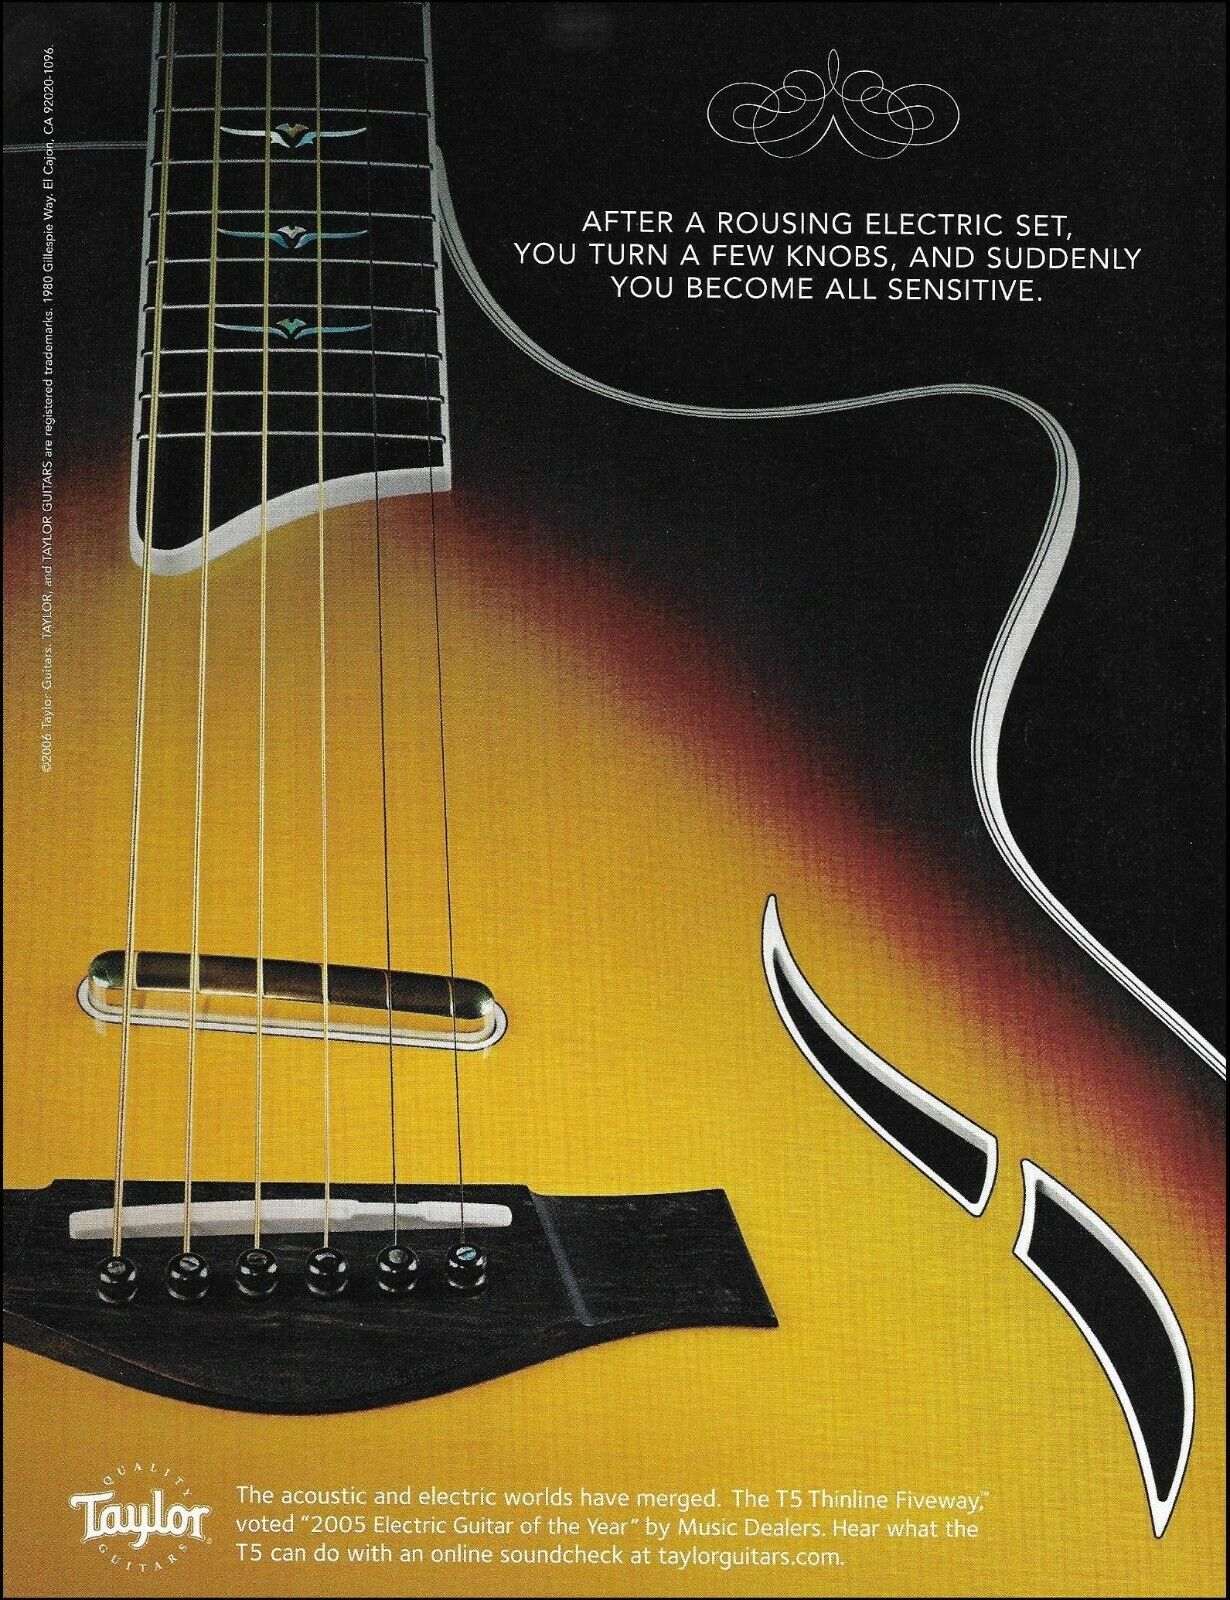 Taylor T5 Thinline Fiveway acoustic/electric sunburst guitar advertisement print